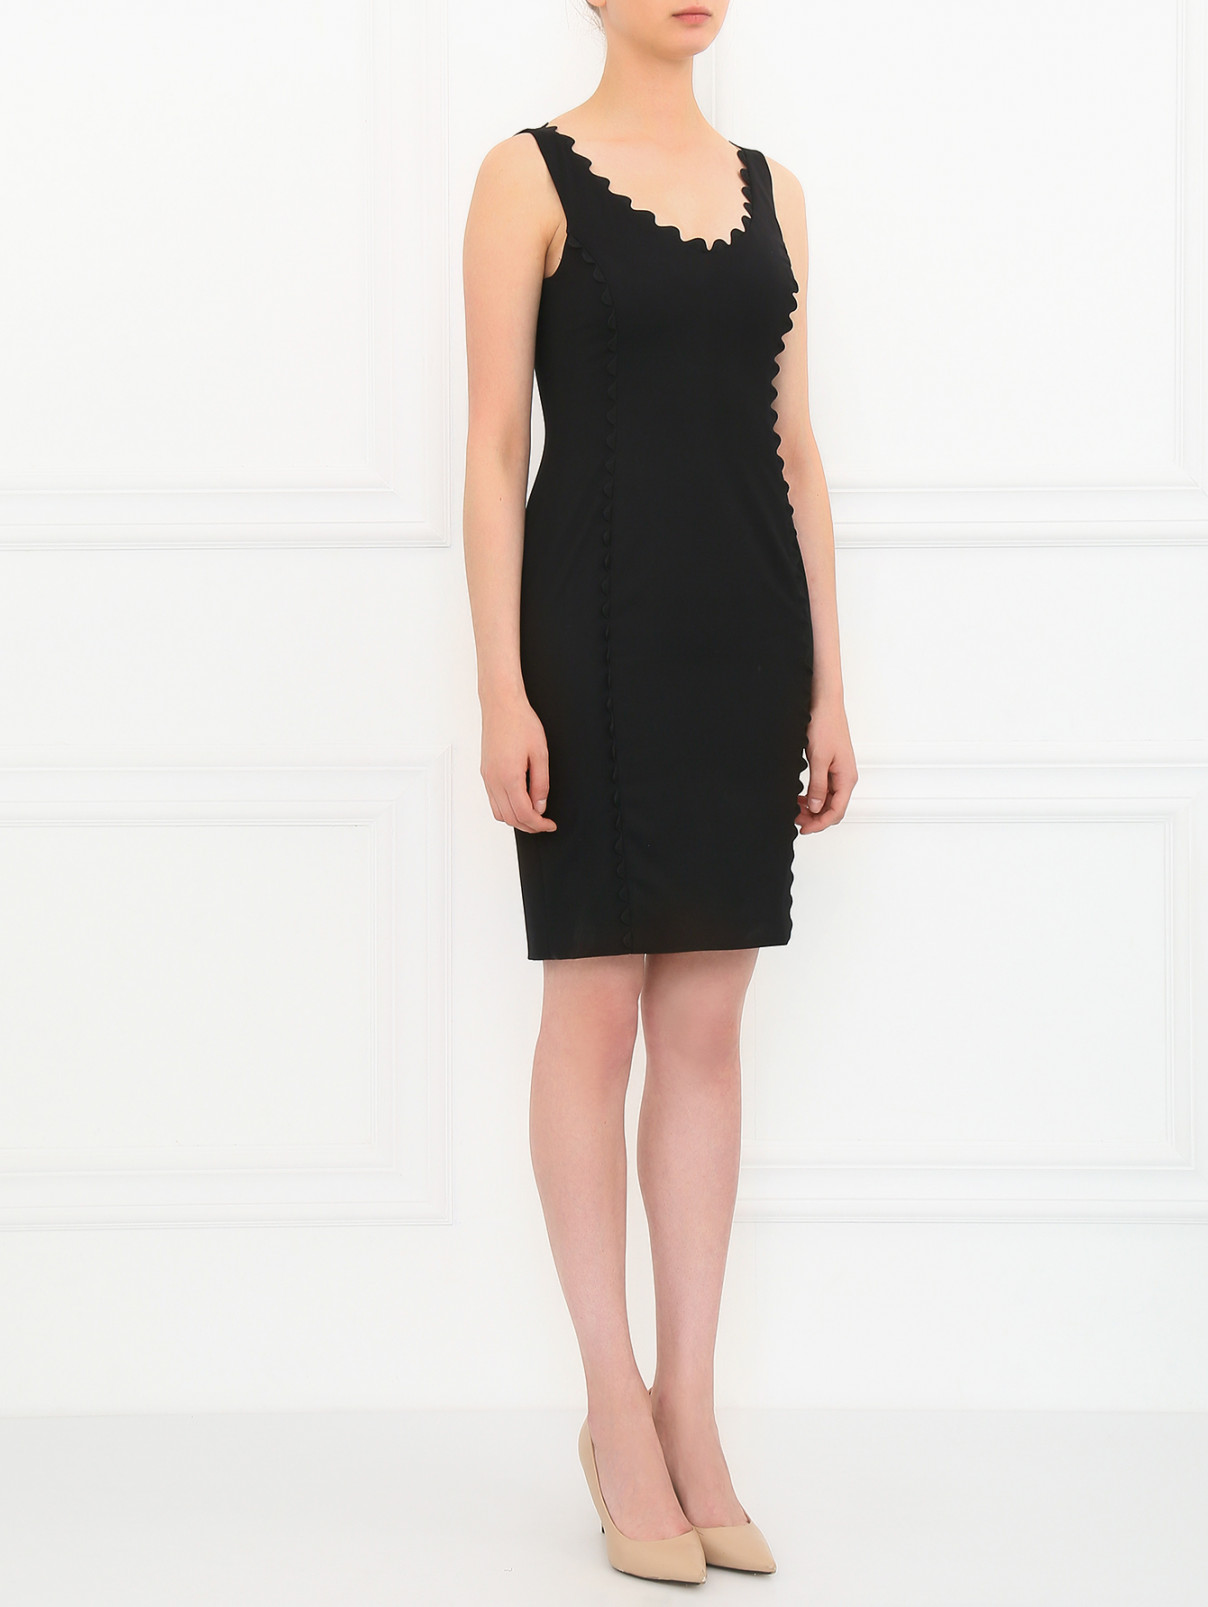 Платье-футляр из шерсти Moschino Cheap&Chic  –  Модель Общий вид  – Цвет:  Черный